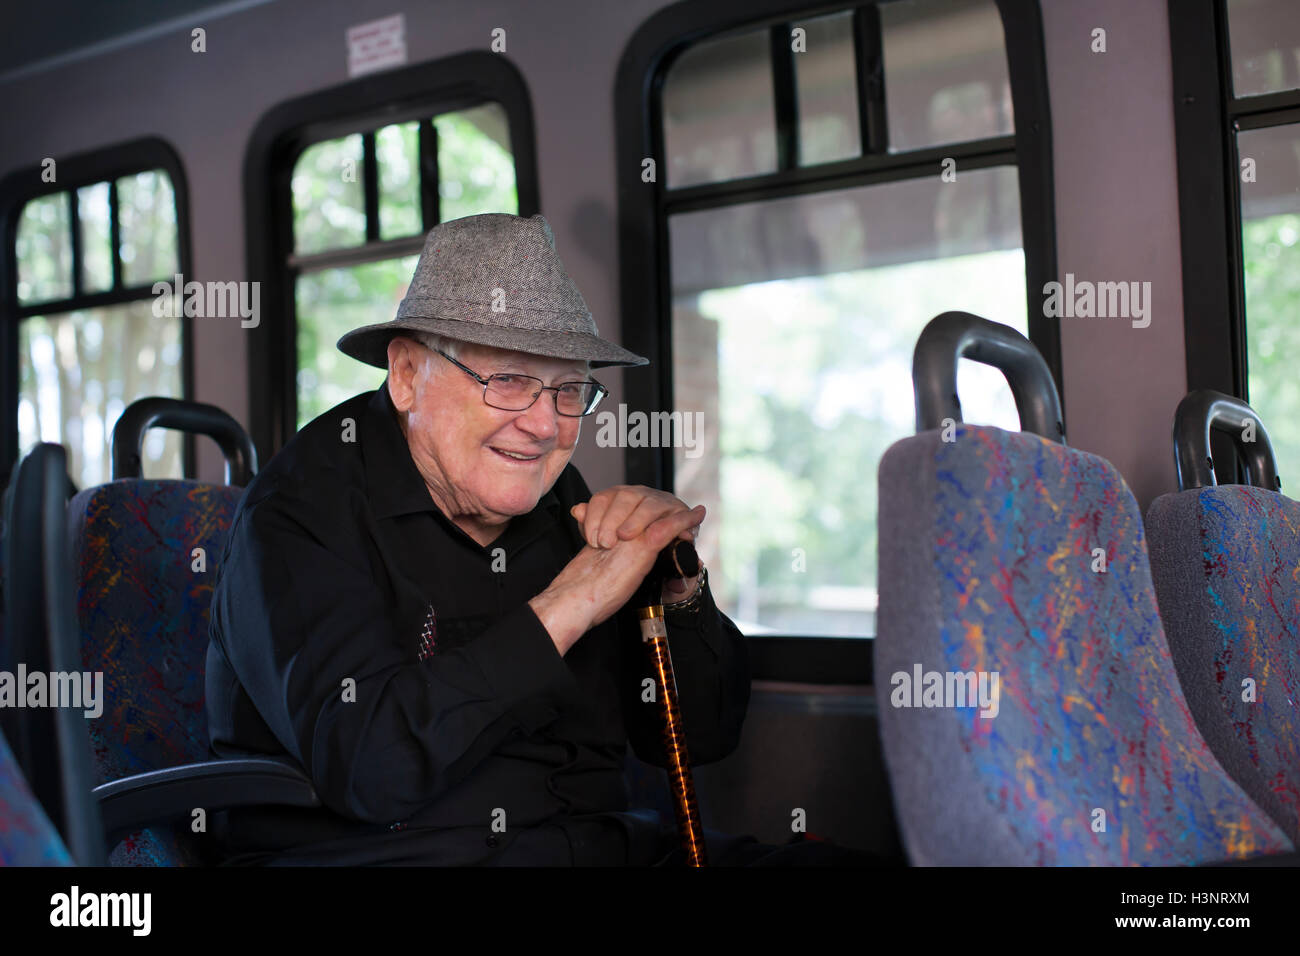 Portrait of senior man sitting on train, holding bâton de marche Banque D'Images